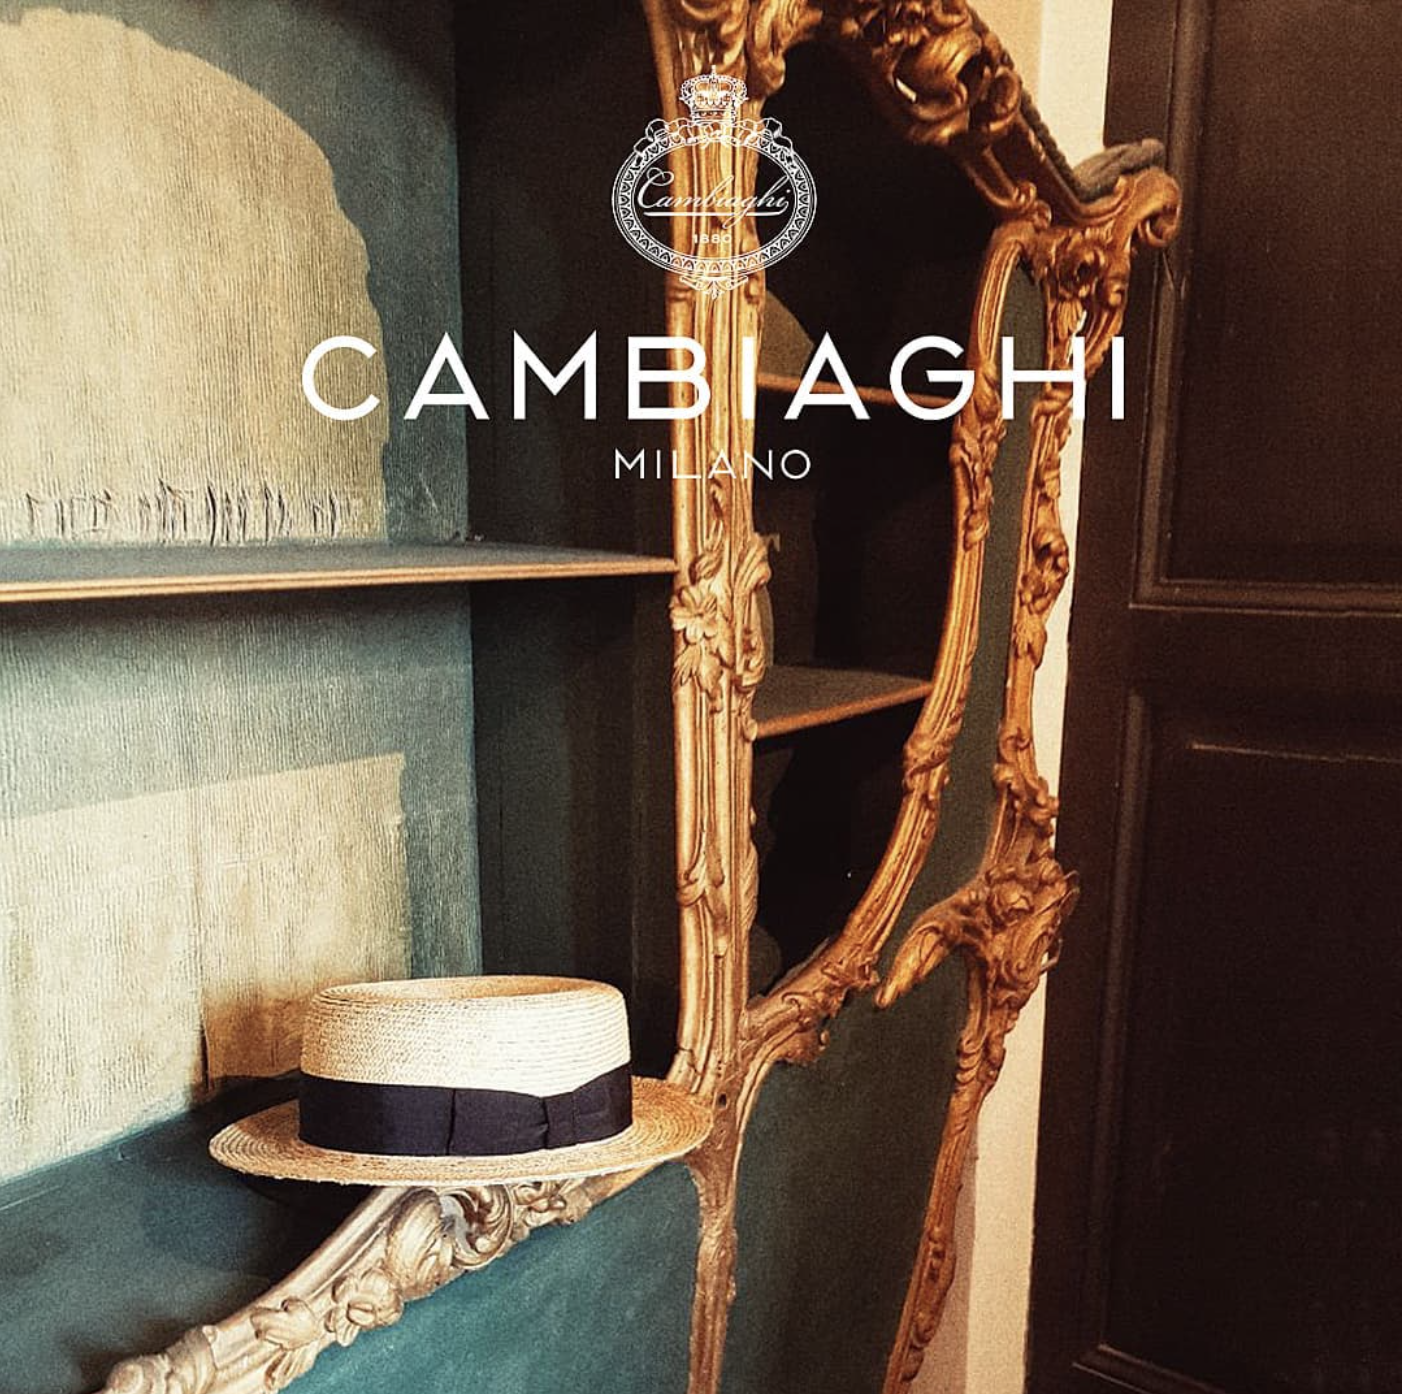 意大利奢侈帽饰品牌 Cambiaghi 将在投资公司 AVM 的支持下重整旗鼓